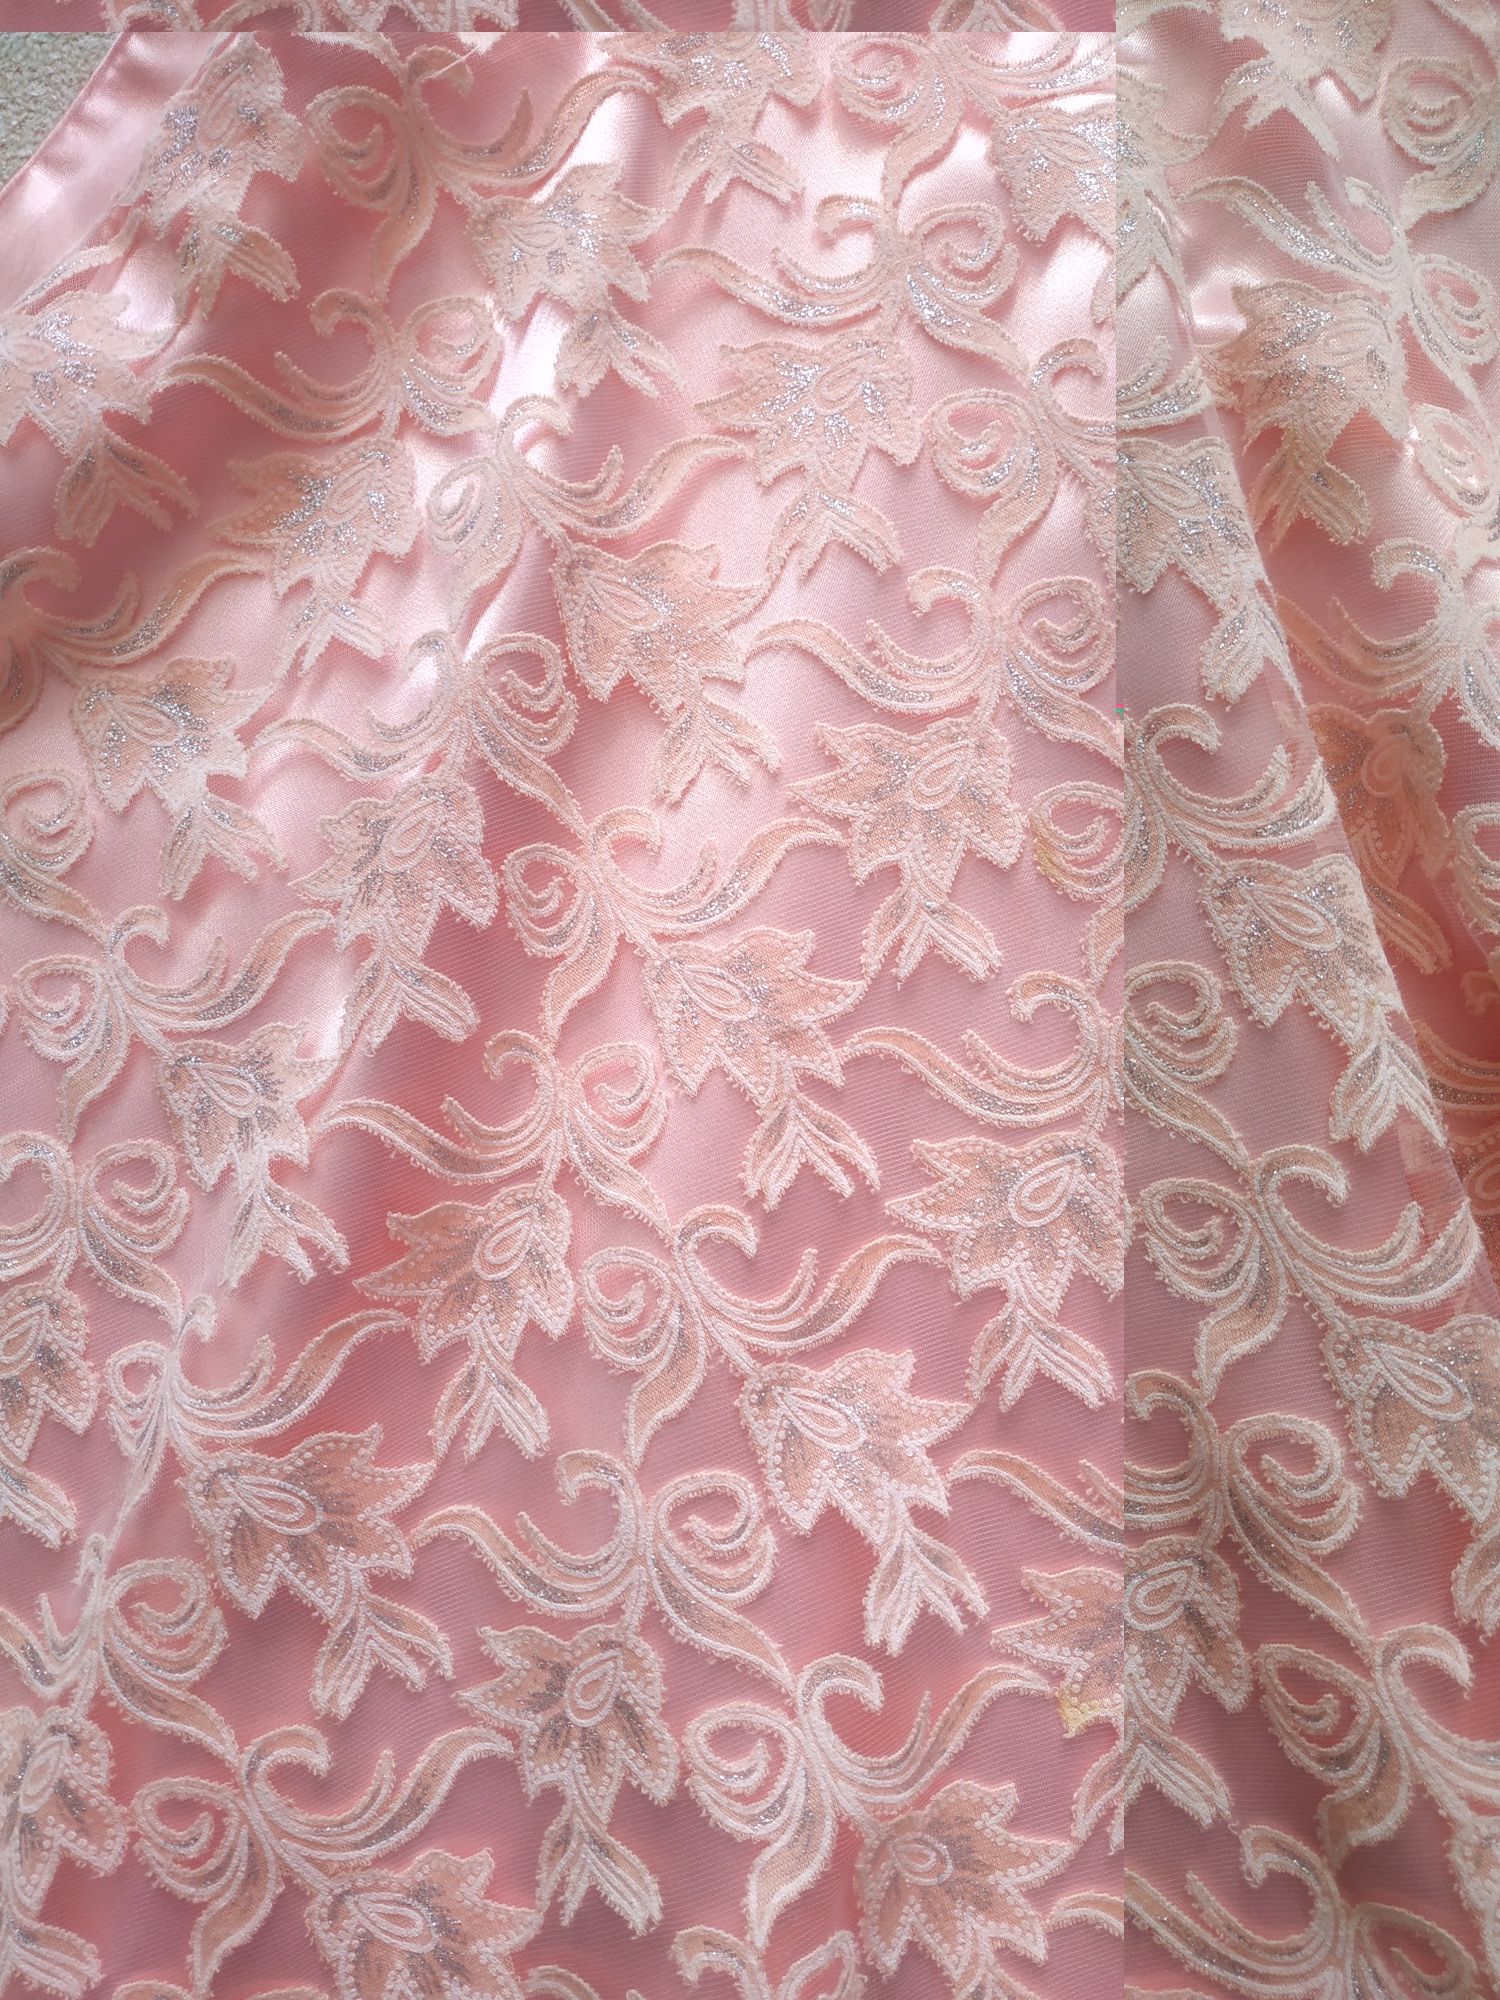 Łososiowa różowa sukienka na wesele impreza ślub dla dziecka dziewczyn